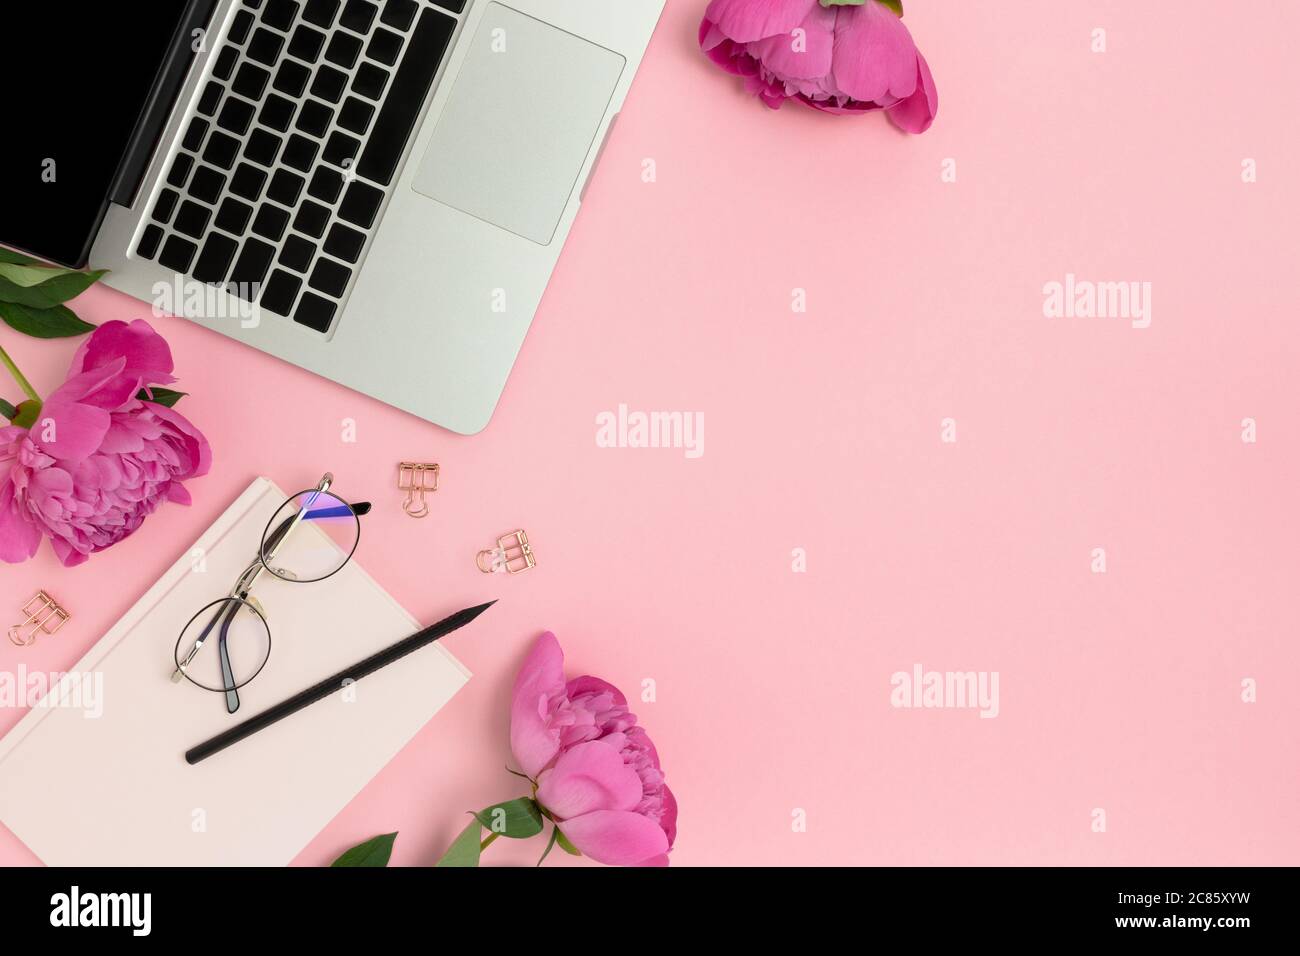 Sự kết hợp hoàn hảo giữa máy tính xách tay, văn phòng phẩm và hoa trên nền màu hồng nhạt sẽ mang đến cho bạn một hình nền đẹp và thú vị trong công việc hàng ngày. Sử dụng hình nền này để thư giãn cho một ngày làm việc mệt mỏi hay giúp bạn tập trung vào công việc của mình.